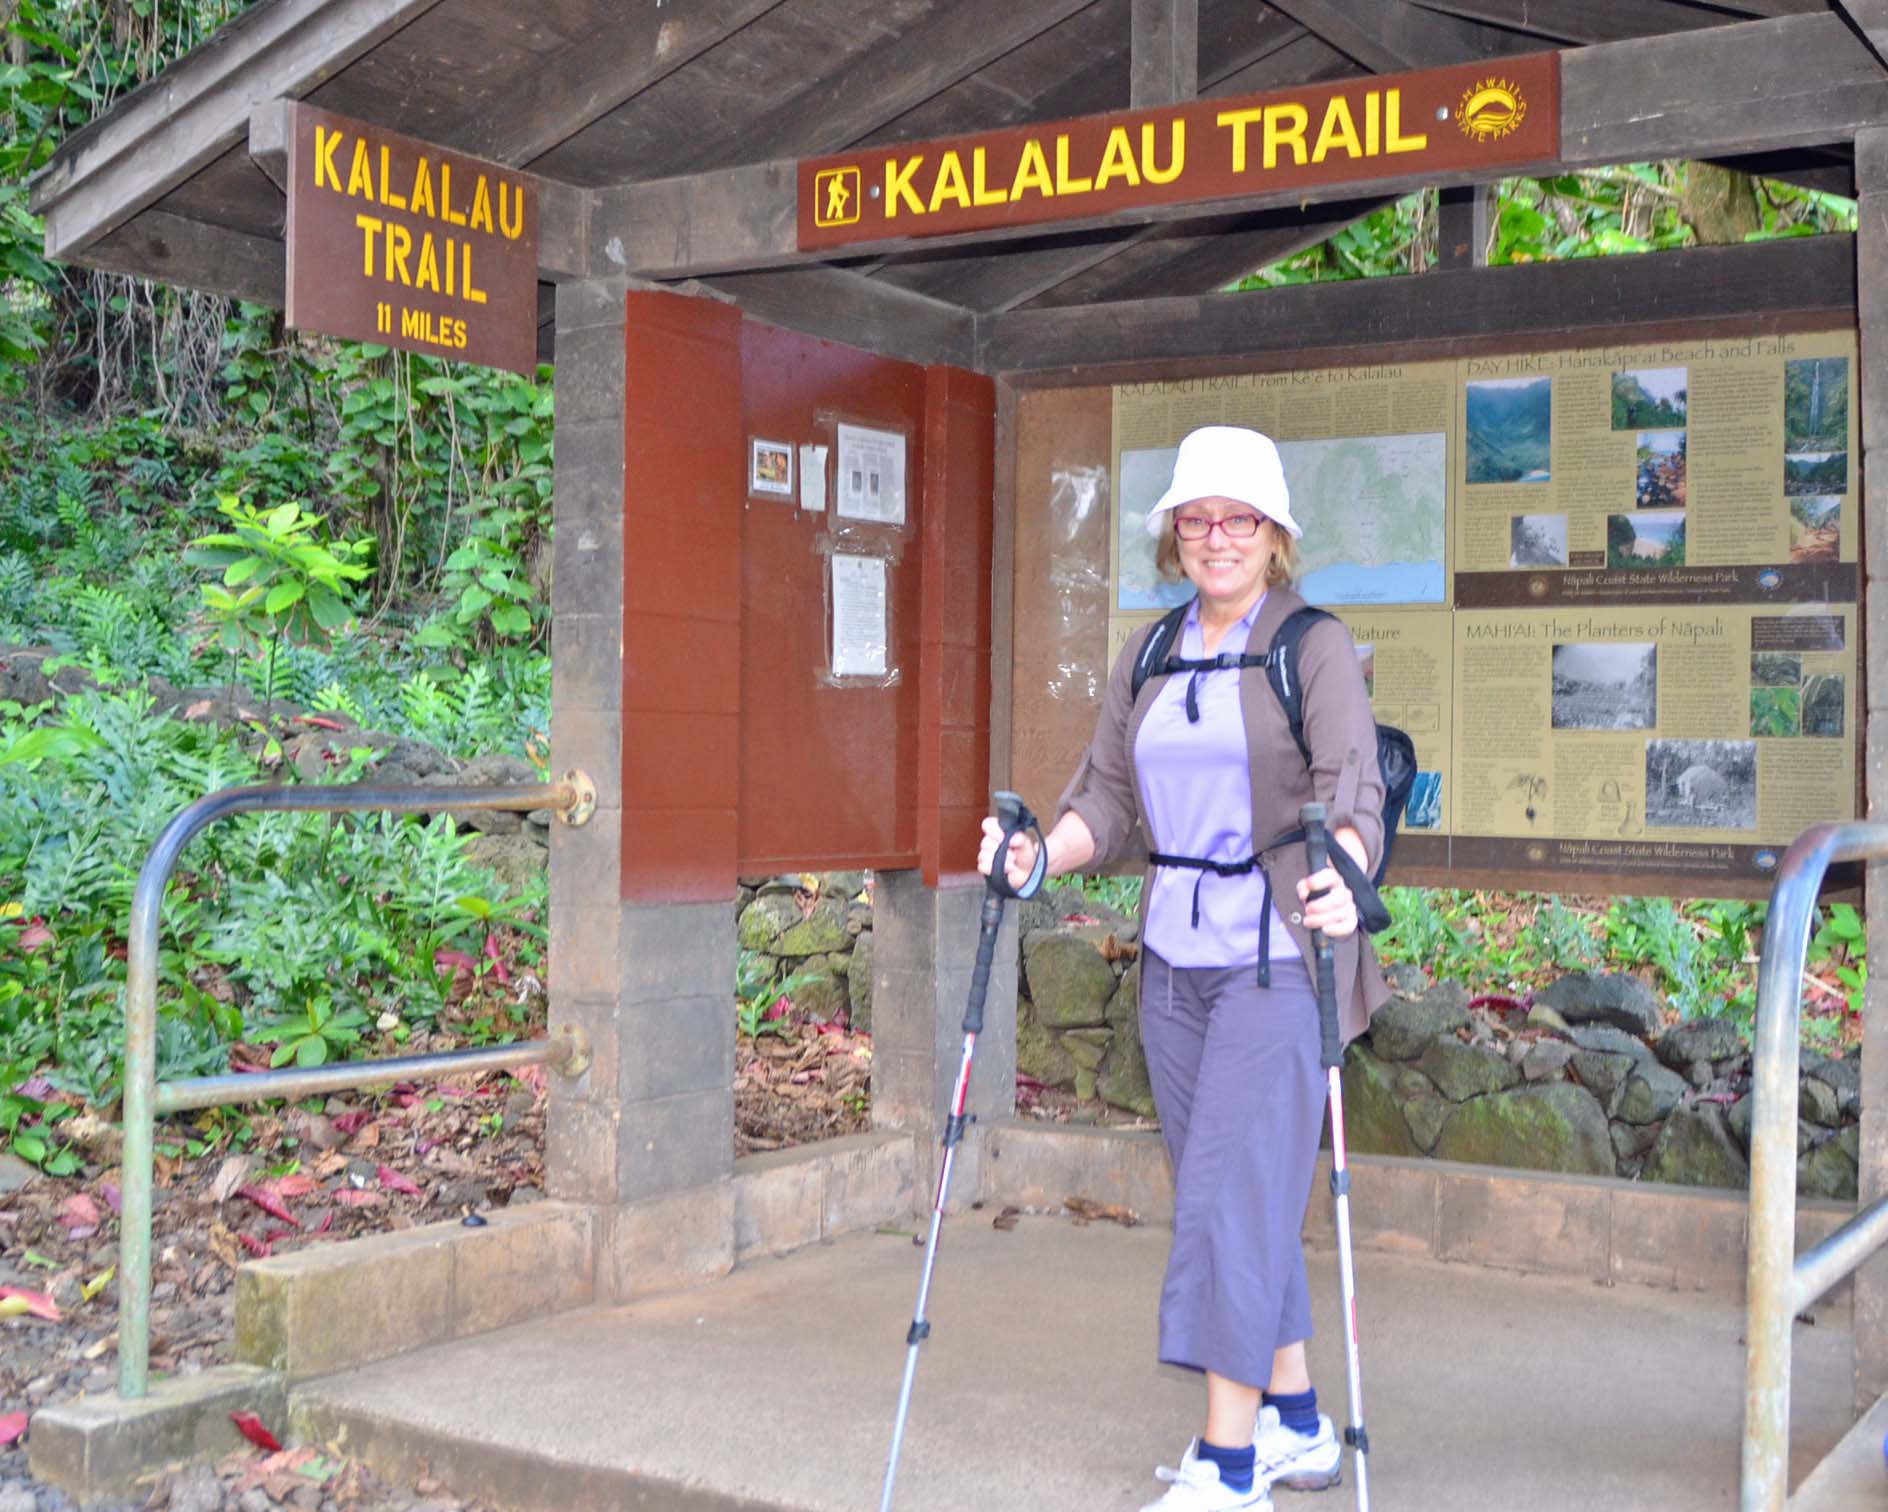 Ready for the Kalalau Trail